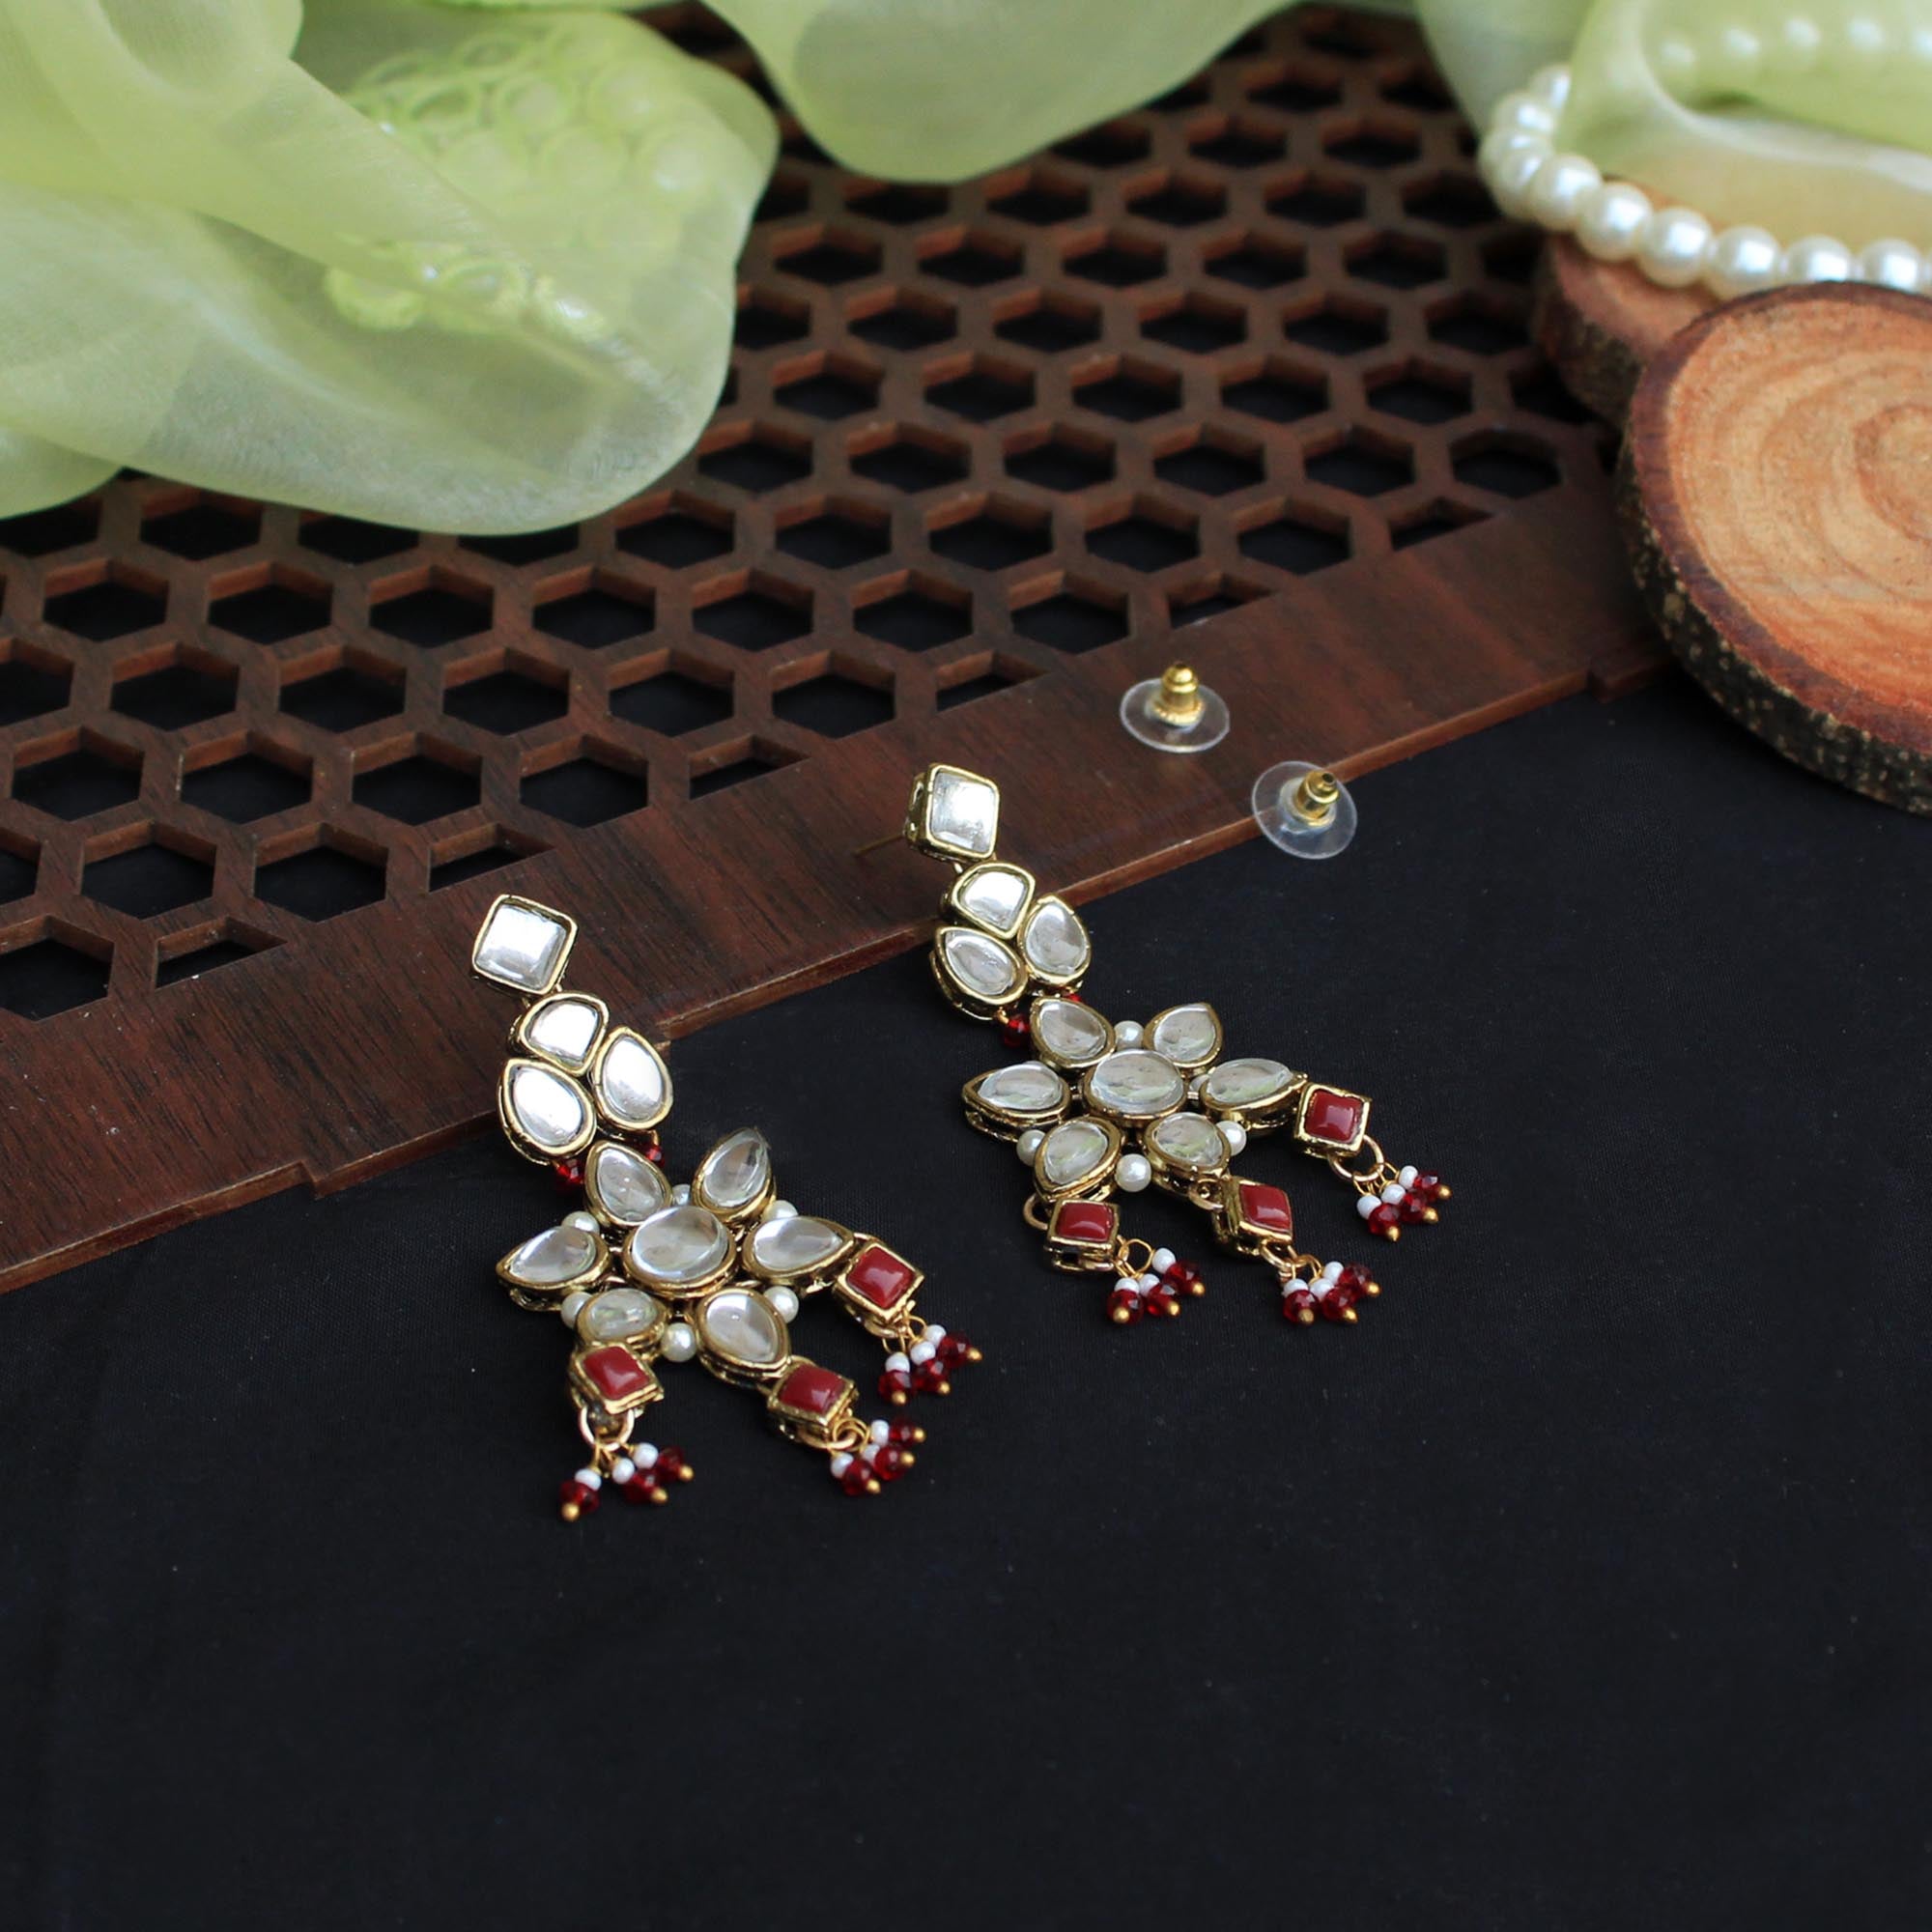 Buy Kundan Earrings Chandbali Handmade Kundan Jewelry Best Gift for Her  Wedding Jewelry Pearl Drop Earrings Gold Finish Designer Earrings Online in  India - Etsy